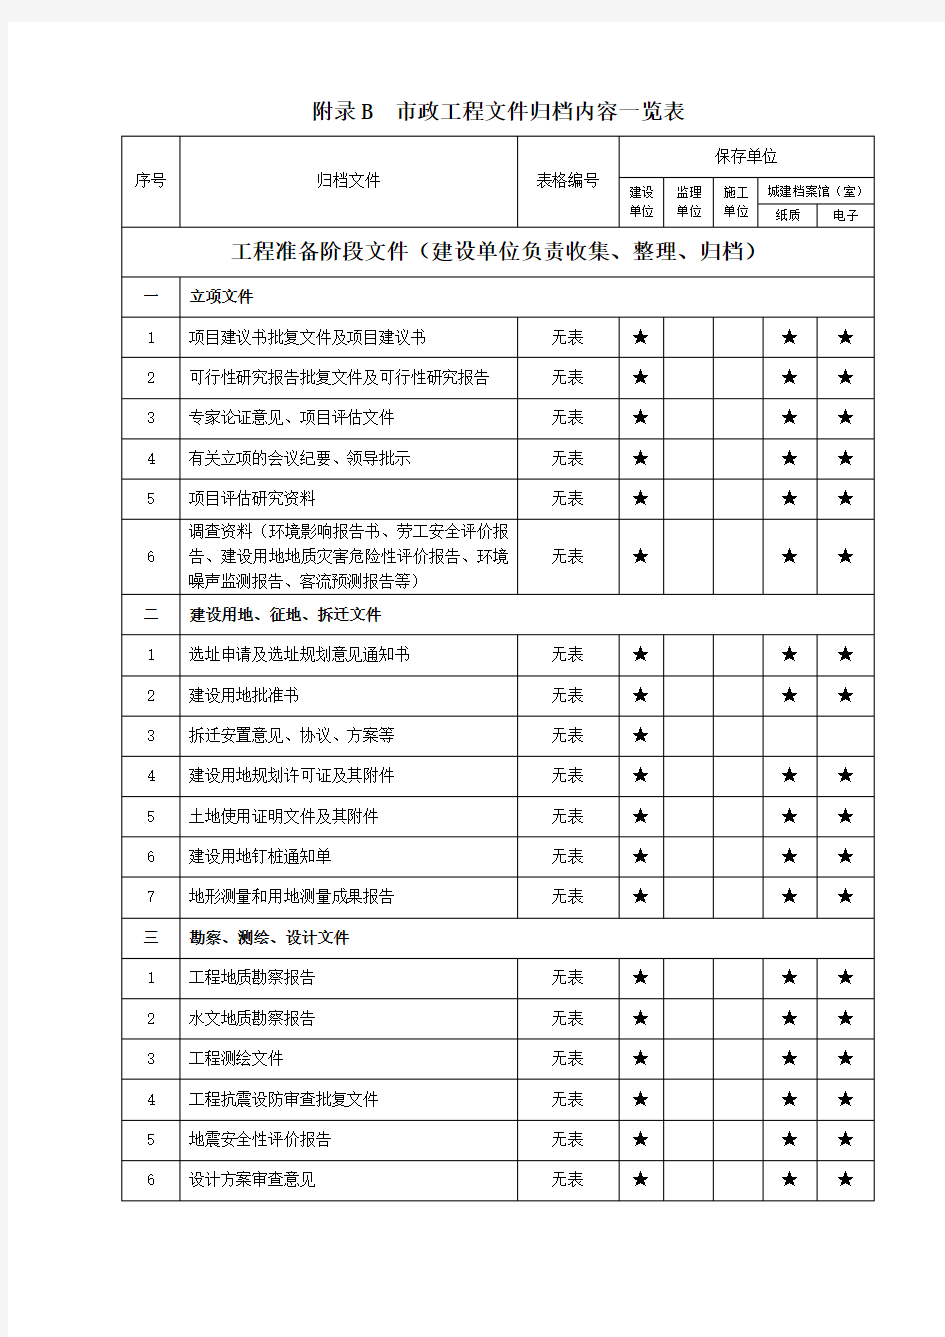 2018年重庆市政工程文件归档内容一览表格模板